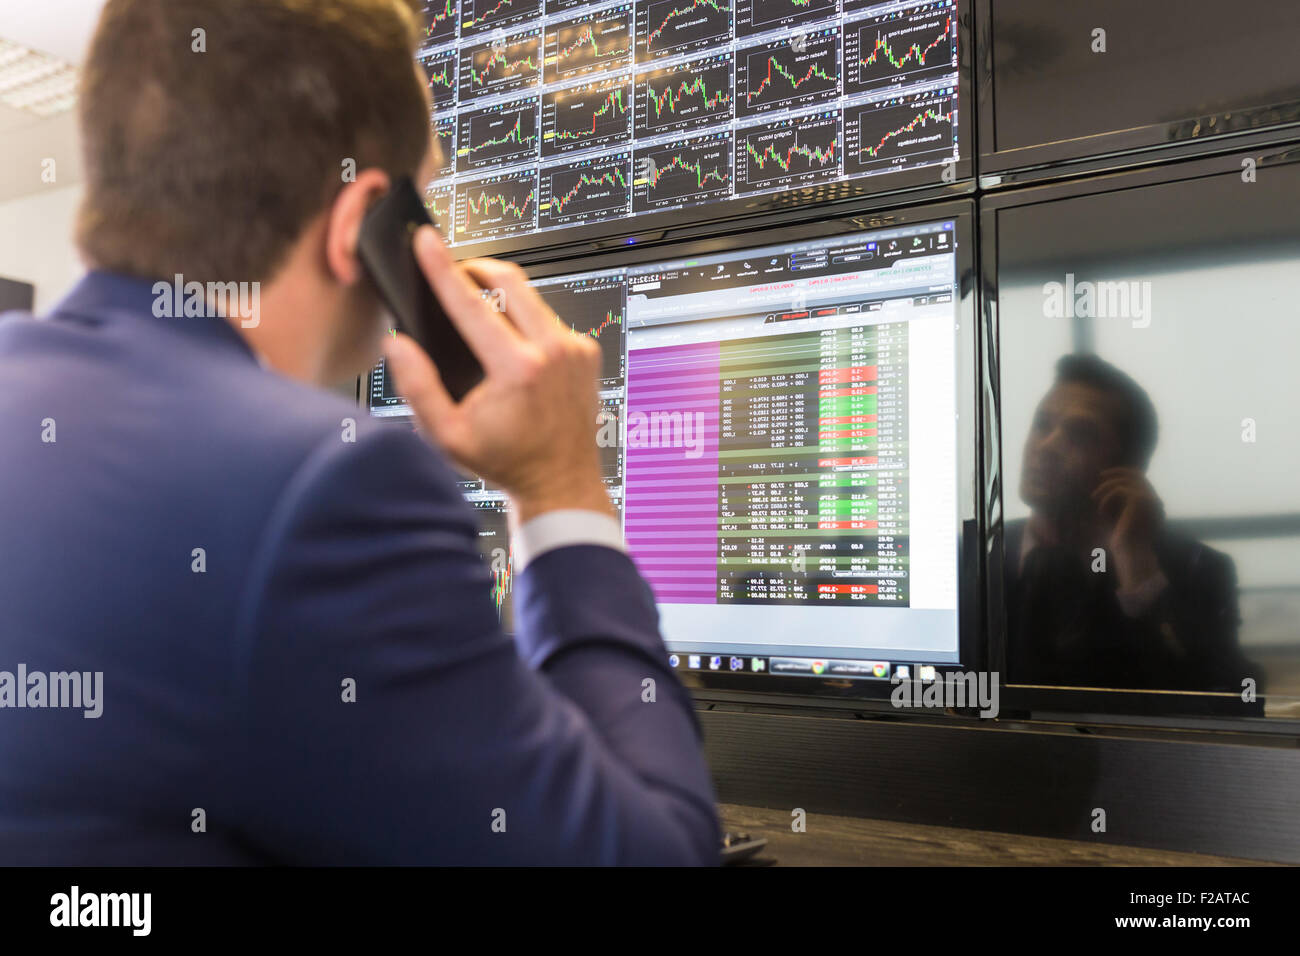 Stock trader looking at computer screens. Stock Photo